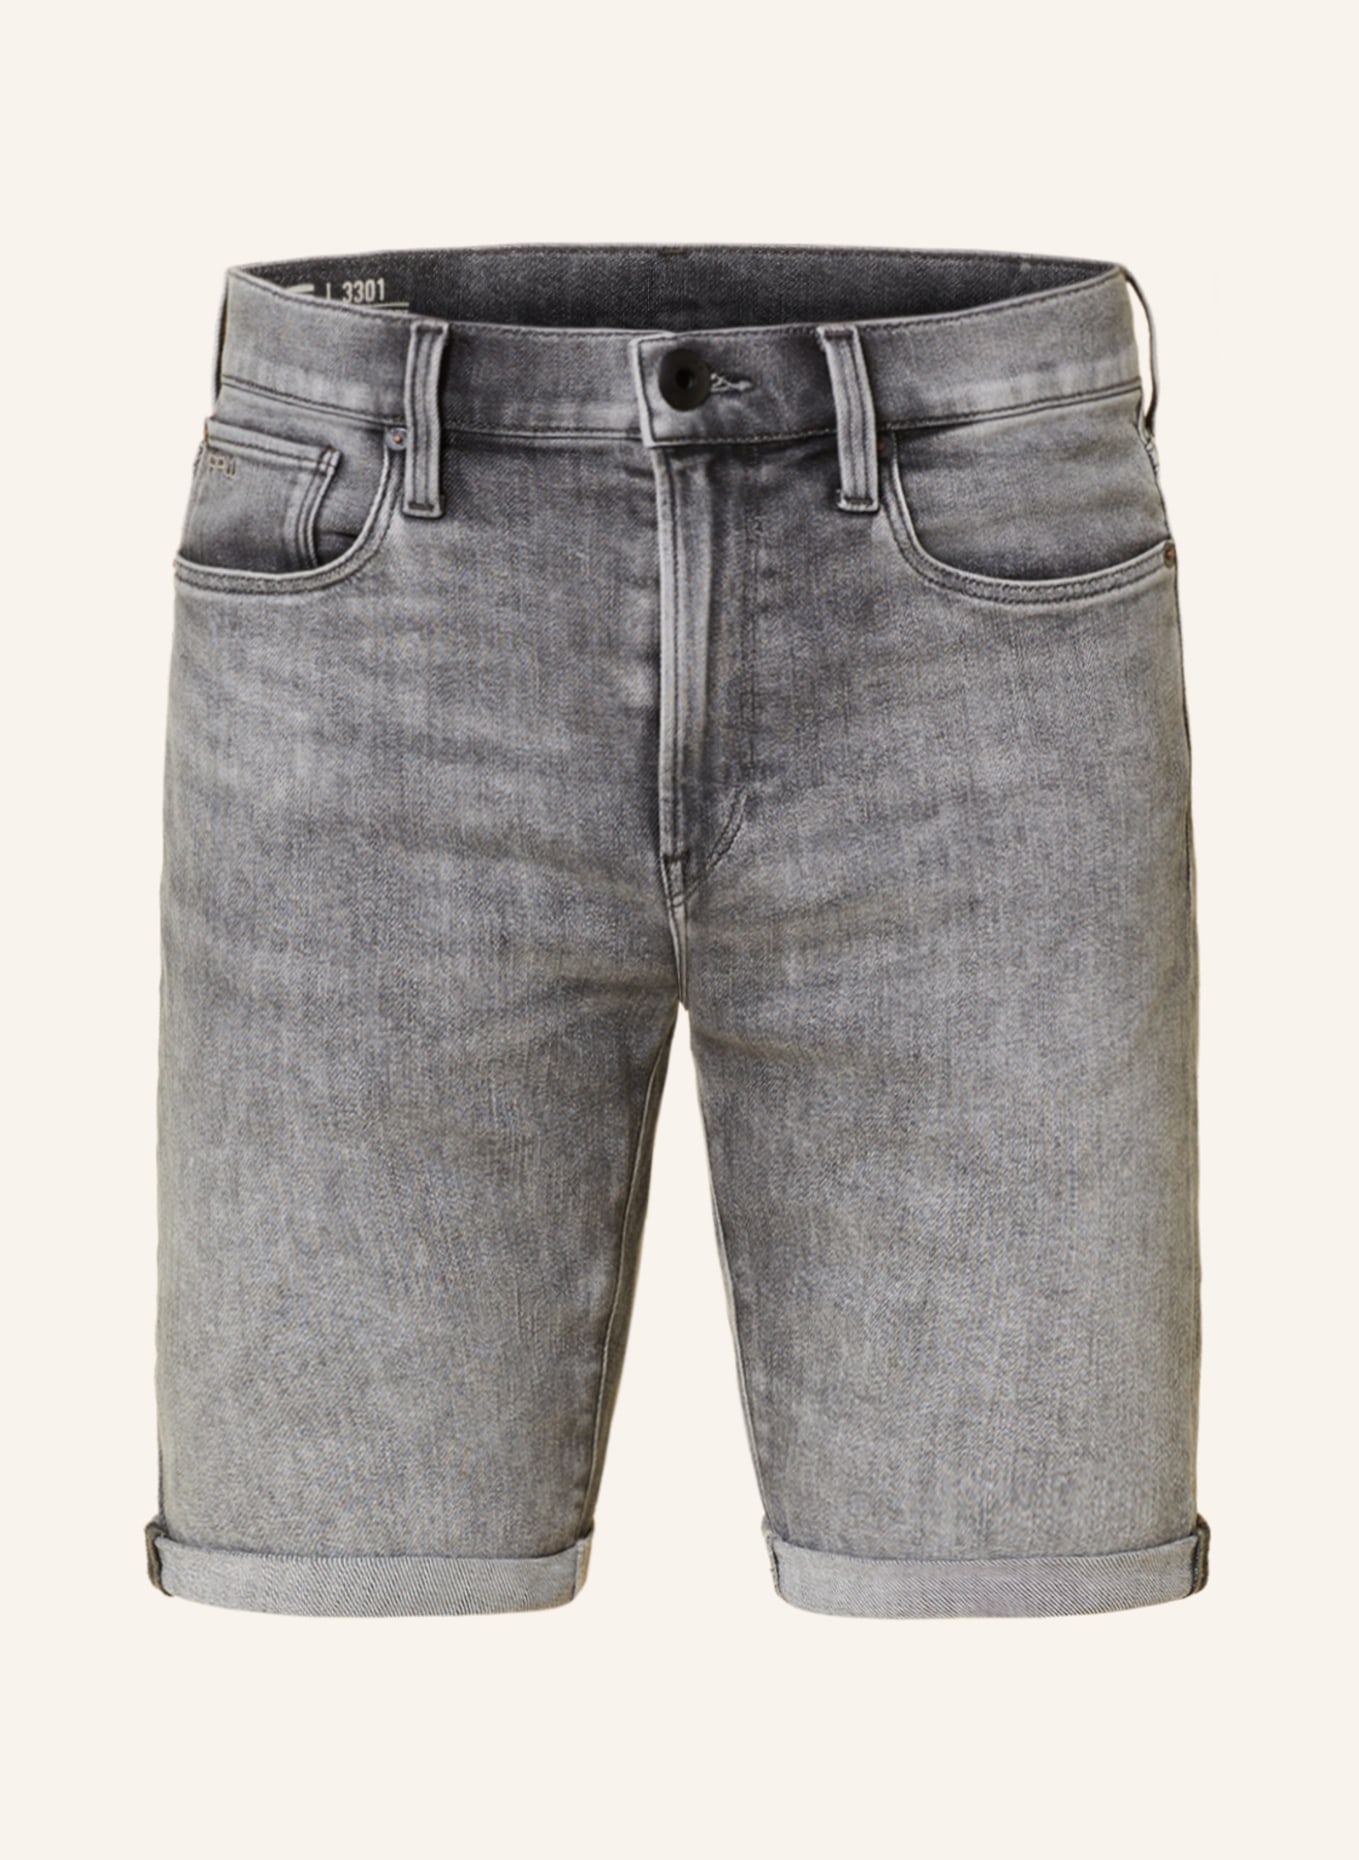 G-Star RAW Denim shorts 3301 SLIM SHORTS, Color: G324 faded grey neblina (Image 1)